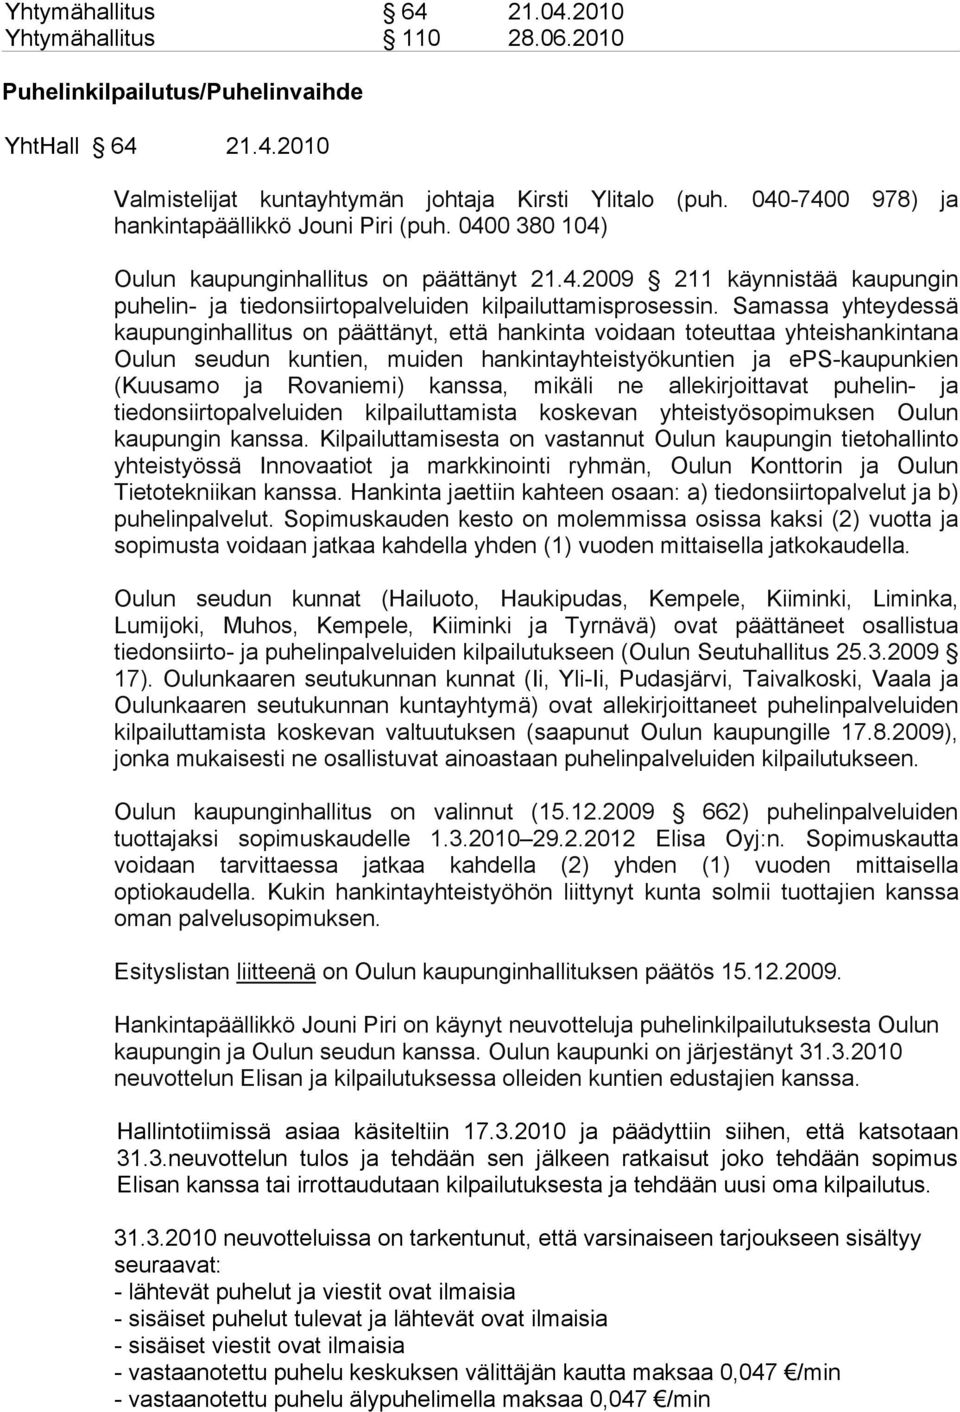 Samassa yhteydessä kaupunginhallitus on päättänyt, että hankinta voidaan toteuttaa yhteishankintana Oulun seudun kuntien, muiden hankintayhteistyökuntien ja eps-kaupunkien (Kuusamo ja Rovaniemi)